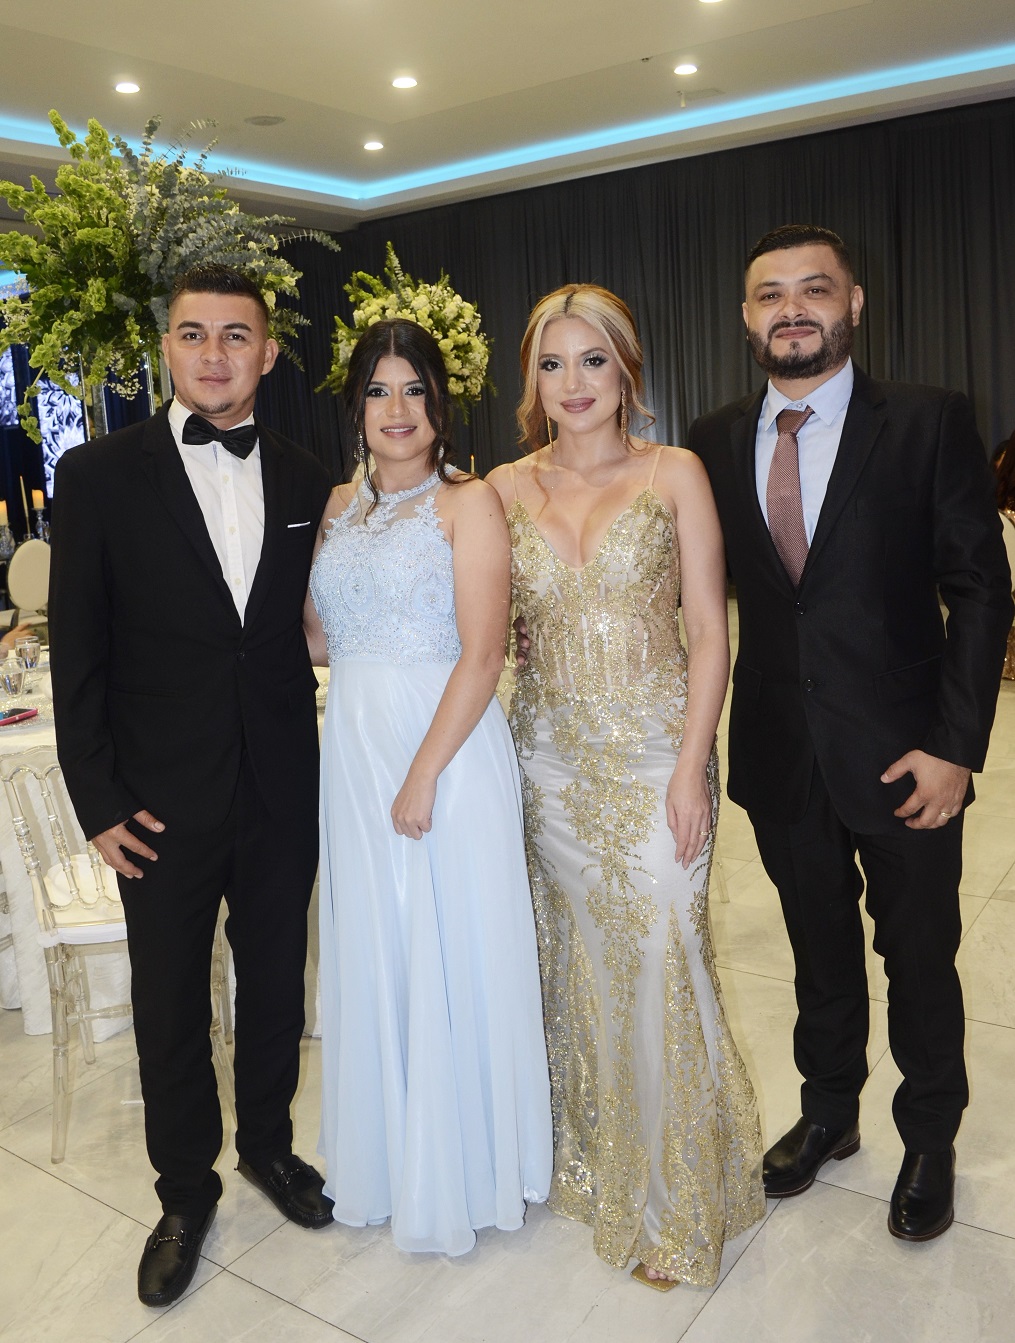 La boda de Carlos Meraz y Anahí Figueroa …una velada llena de encanto